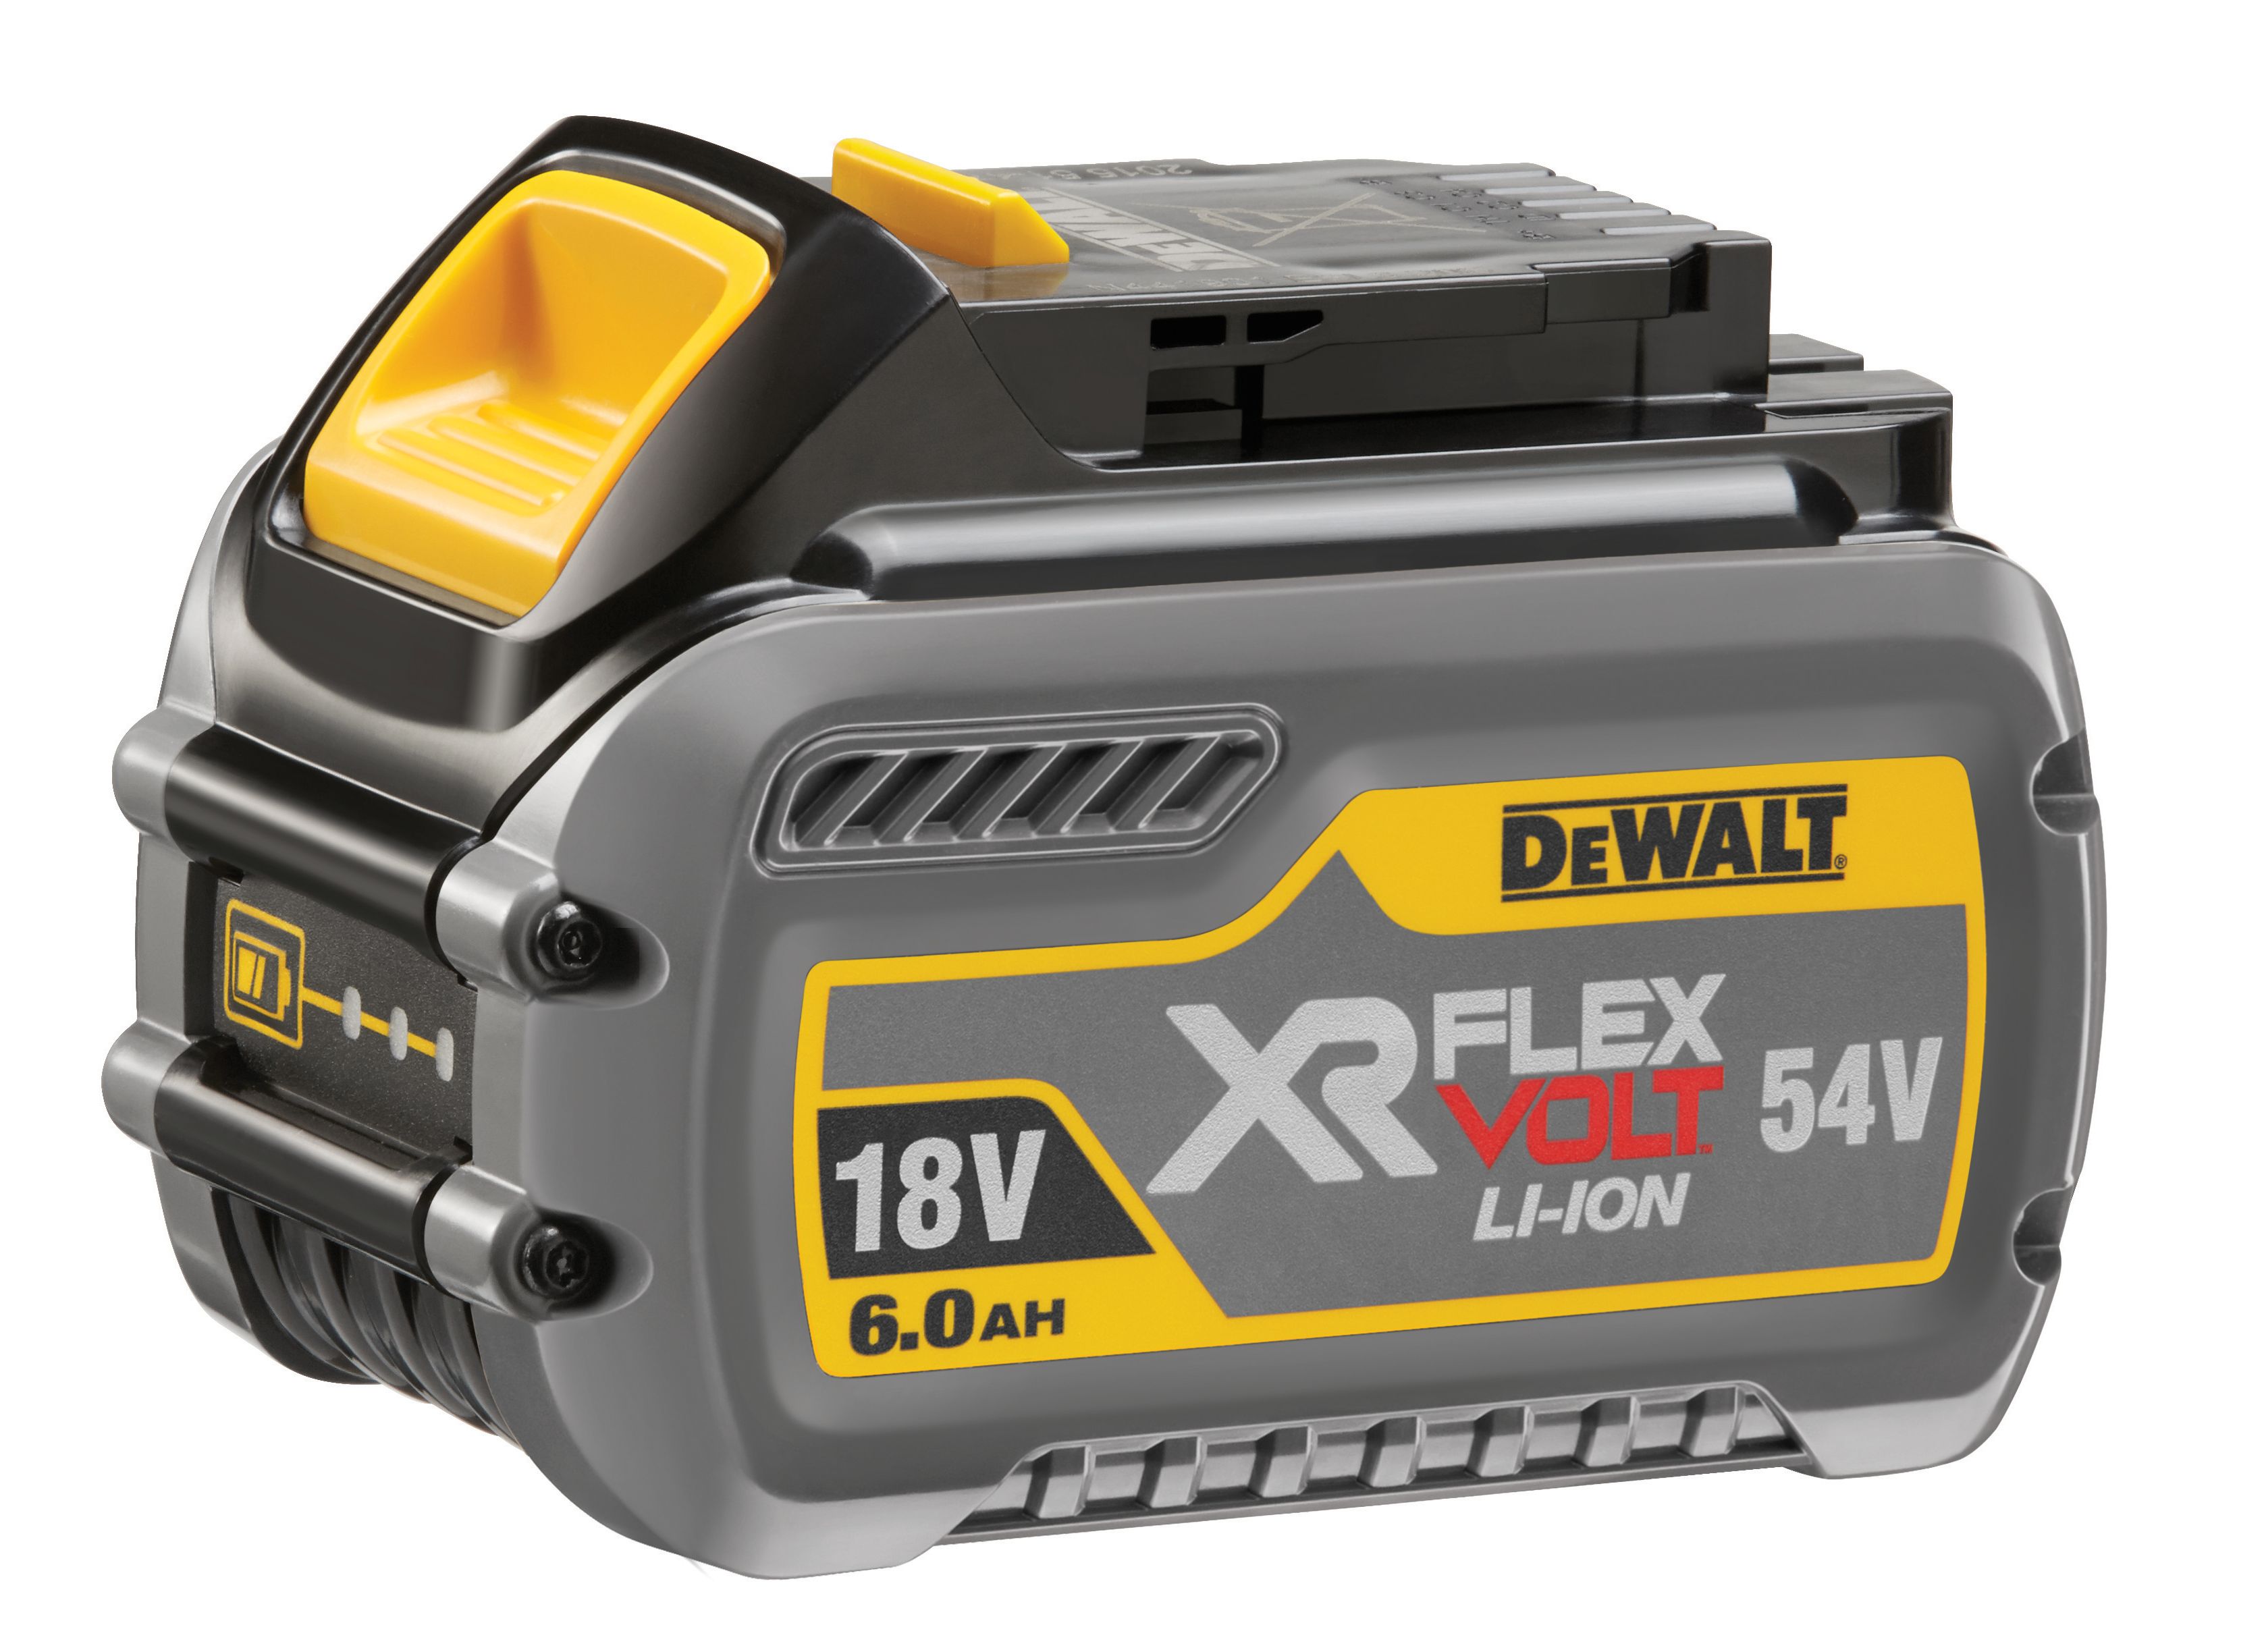 Image of DEWALT DCB546 18V - 54V Xr Flexvolt 6.0AH Battery